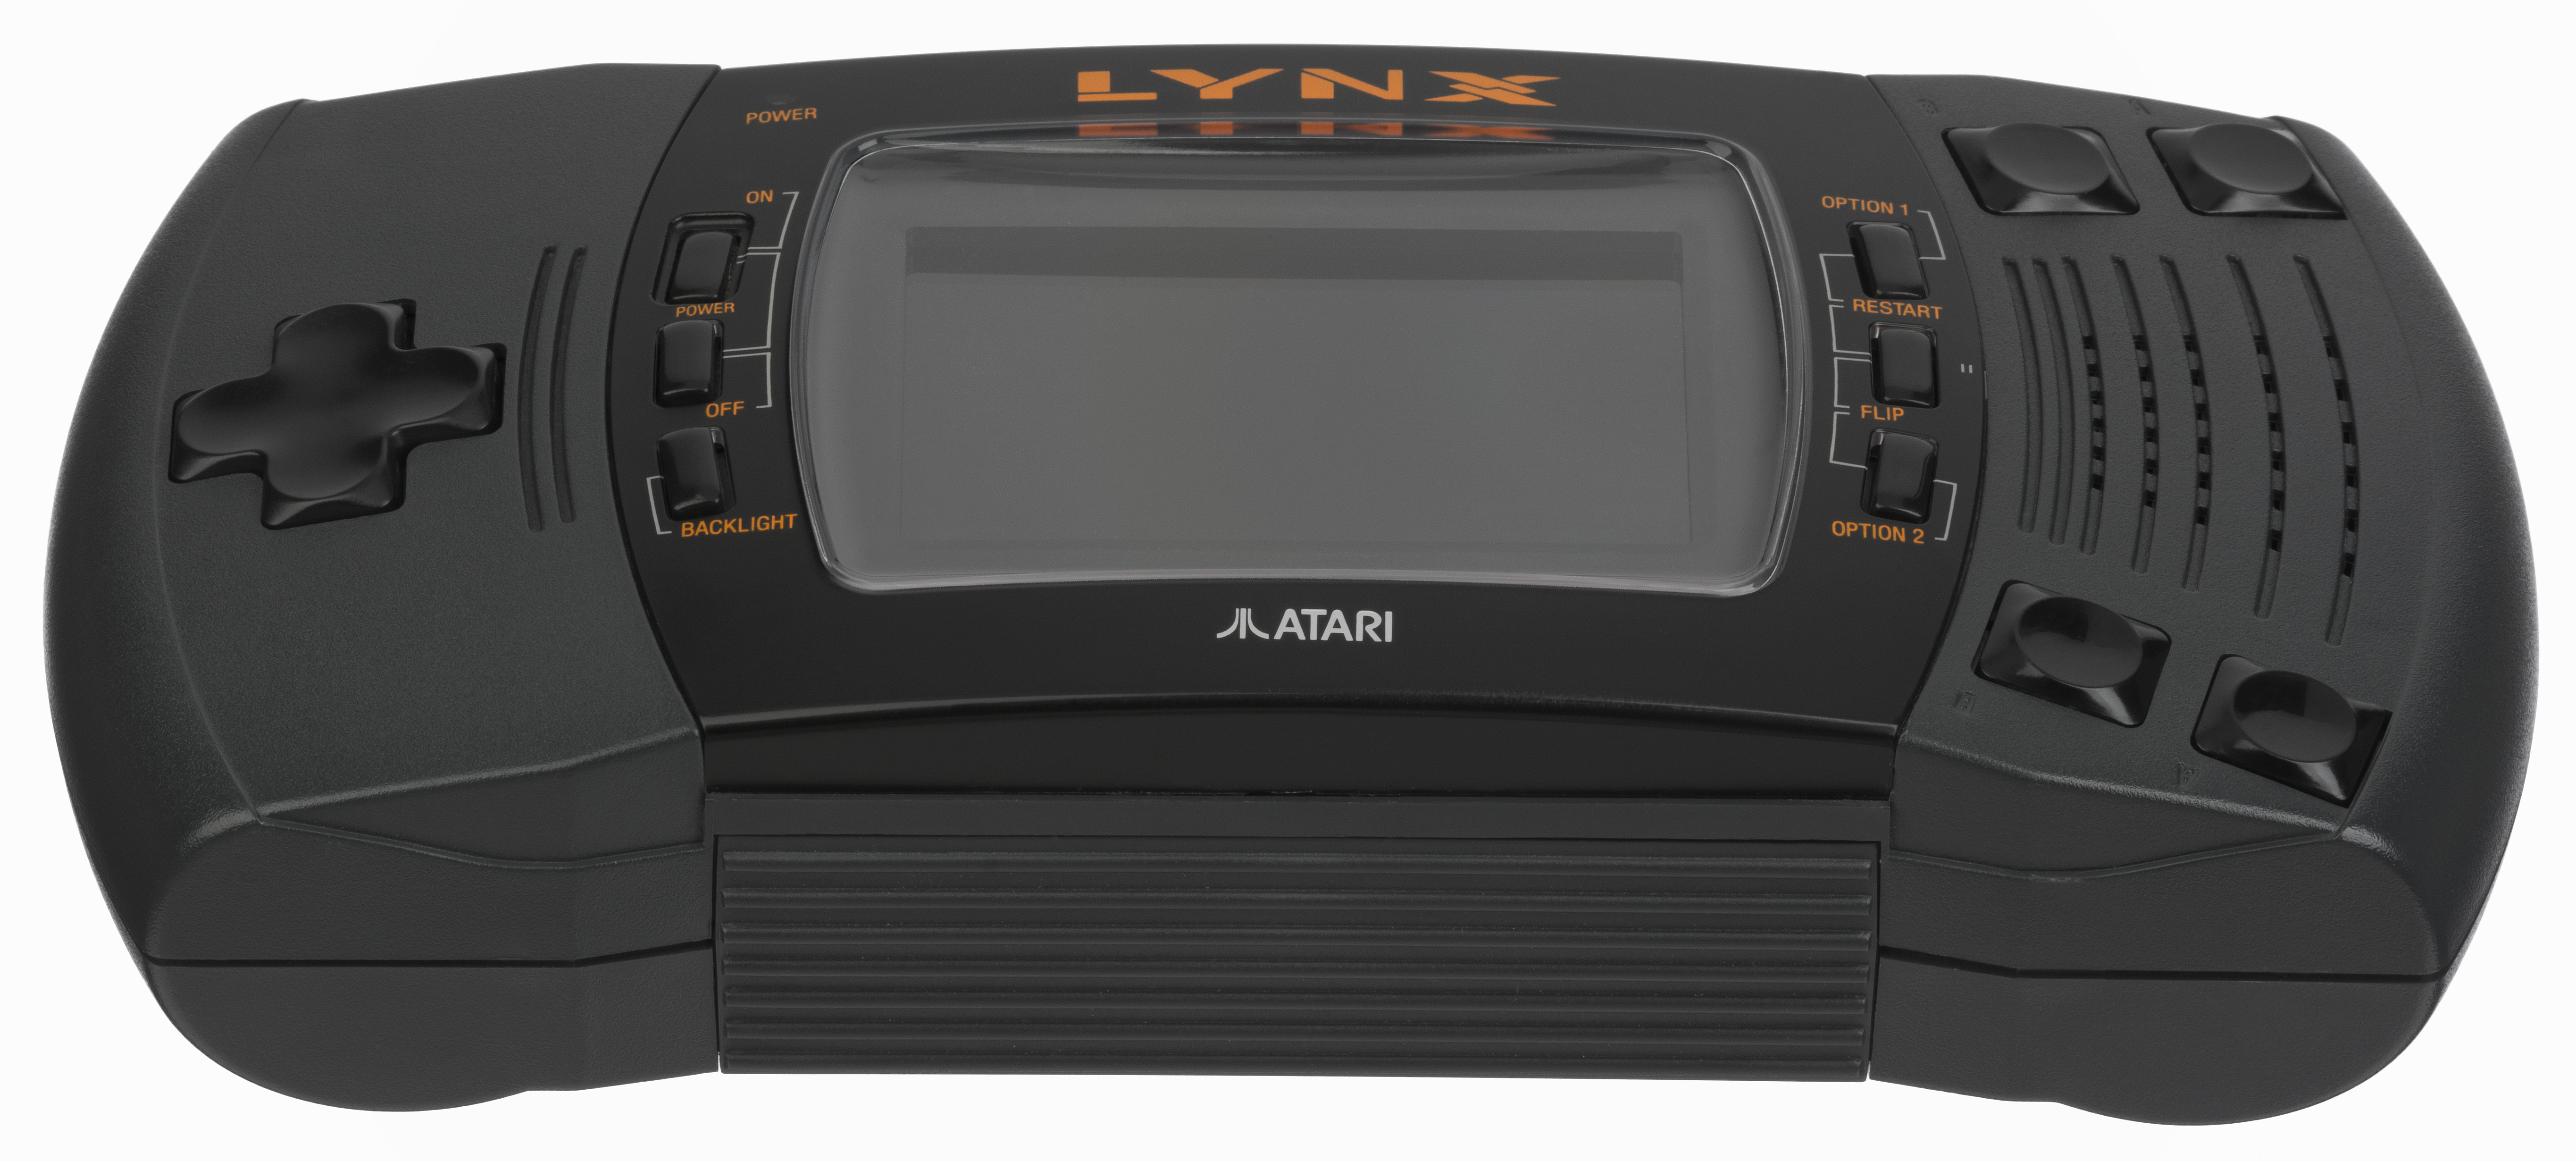 flyde over Styrke fravær File:Atari-Lynx-II-Front-Laid.jpg - Wikimedia Commons